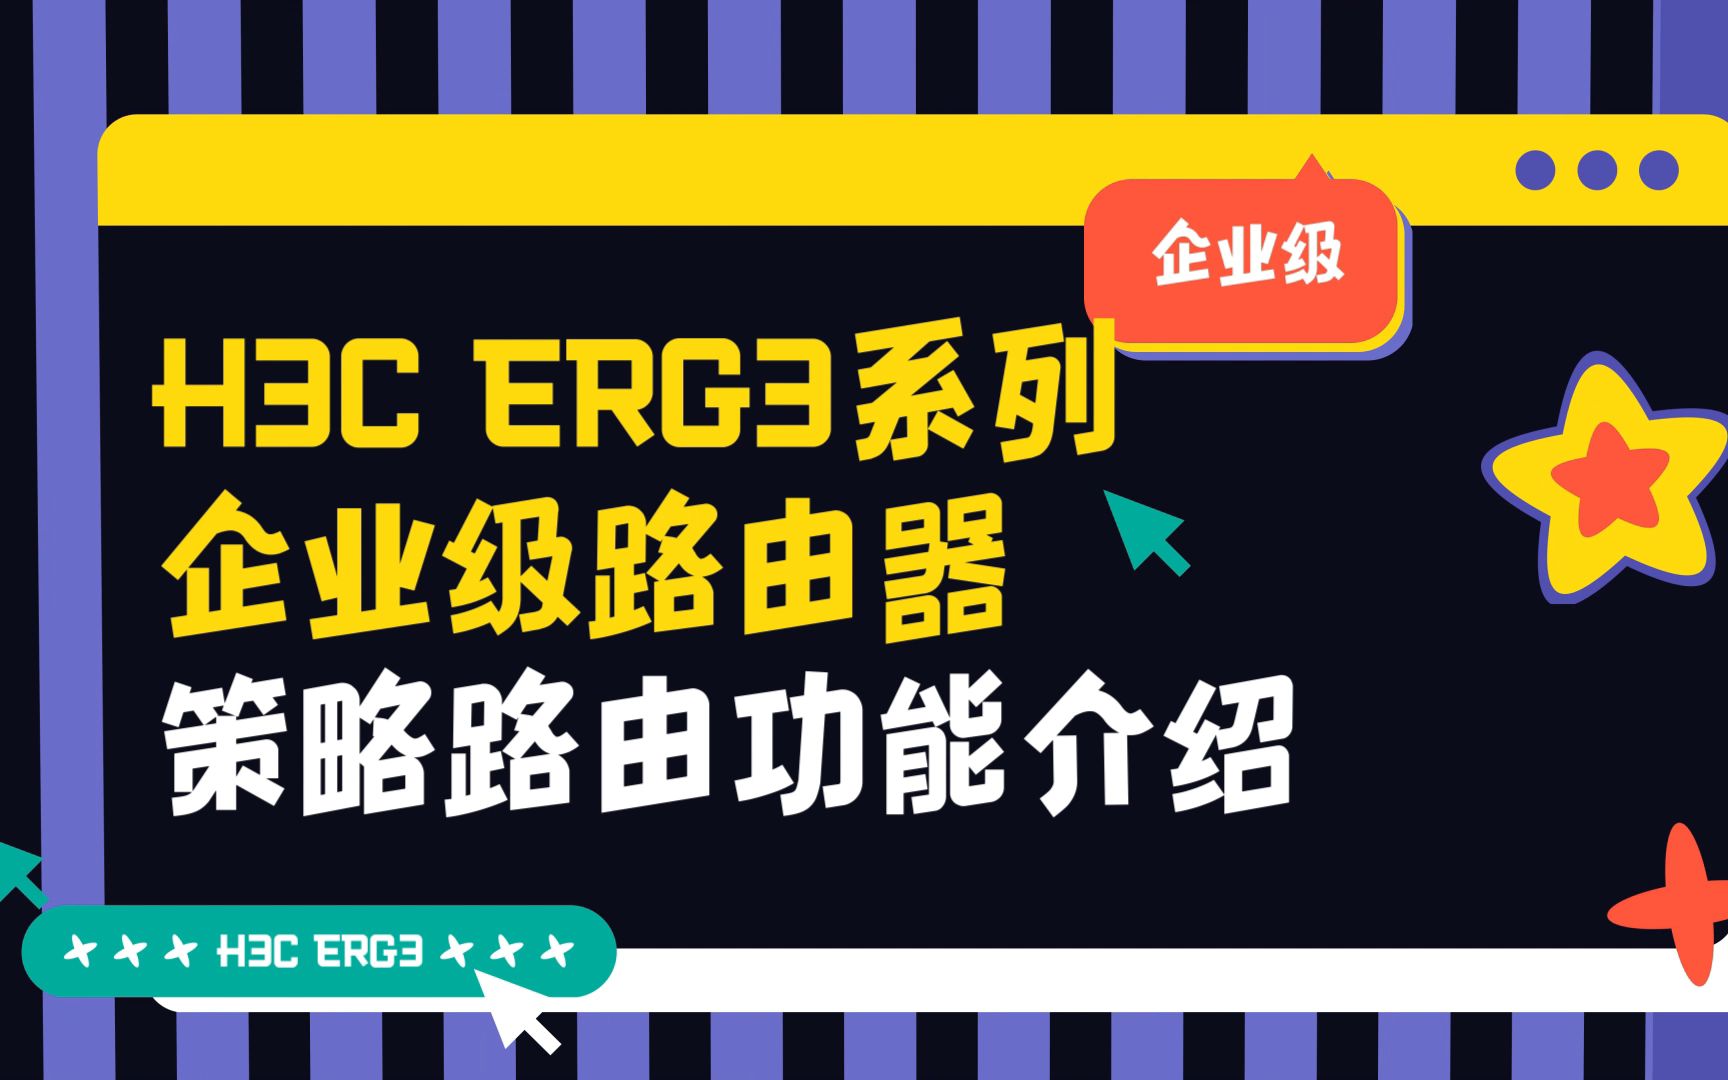 H3C ER G3系列路由器 策略路由 功能介绍视频